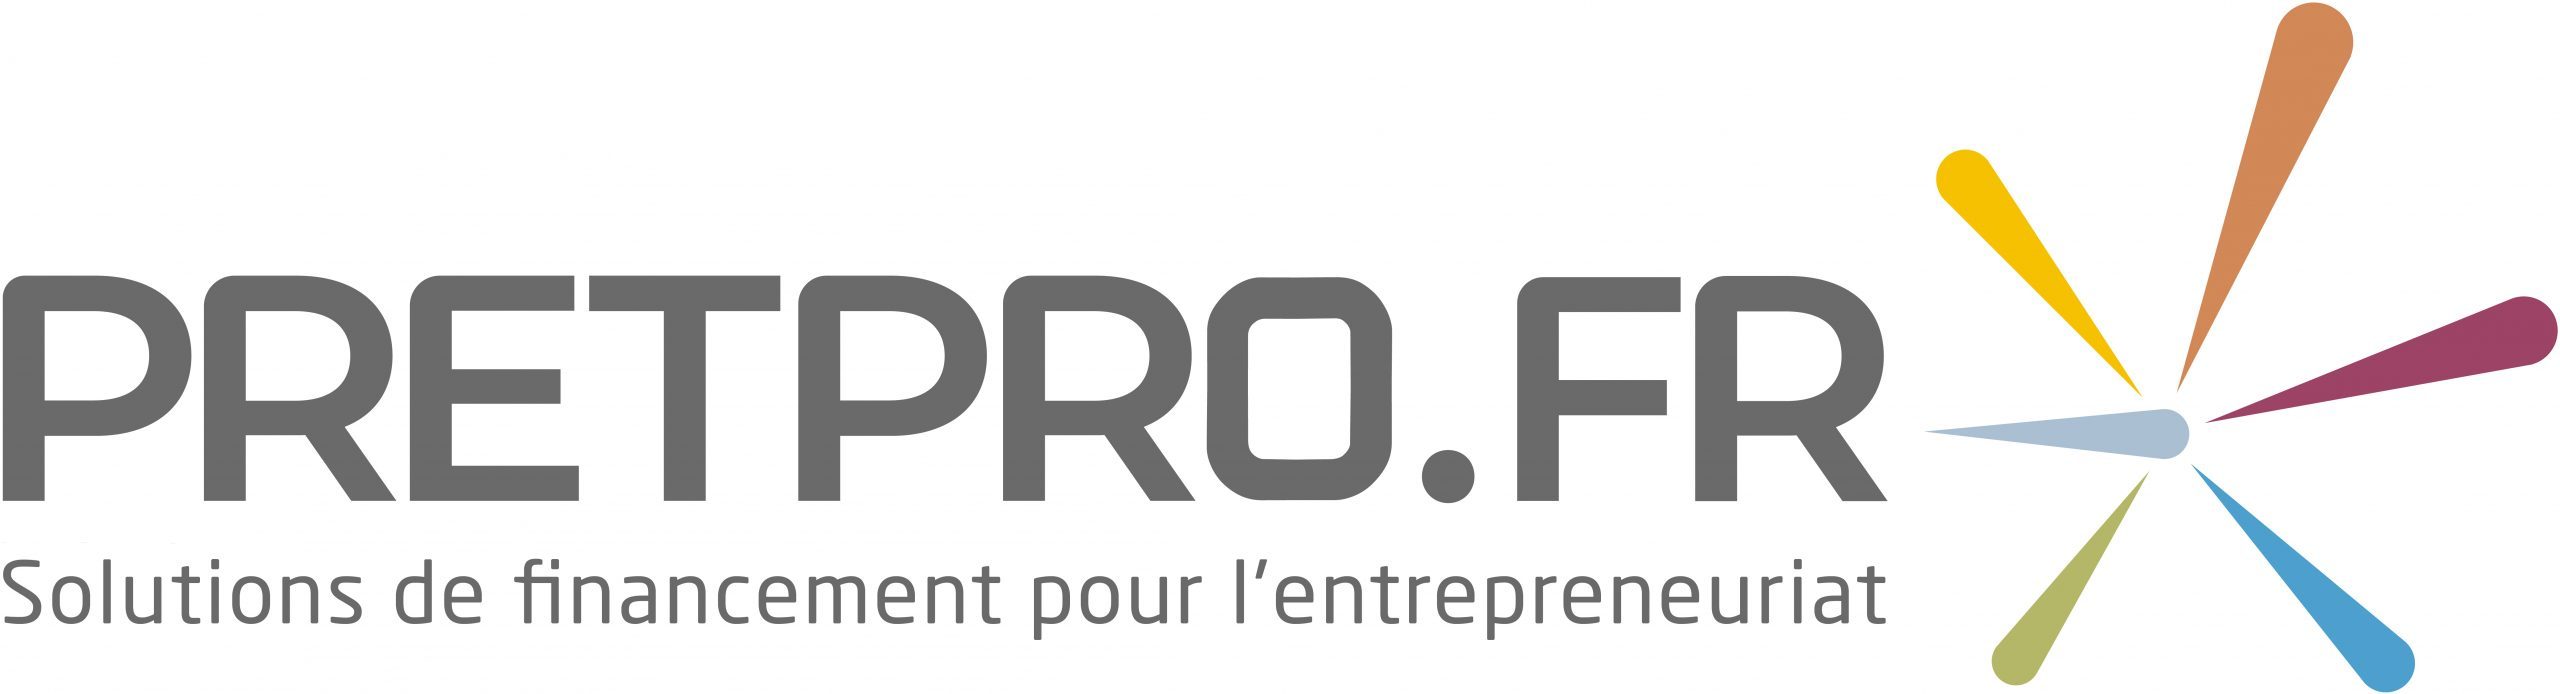 Pretpro.fr – Nouvelle-Aquitaine